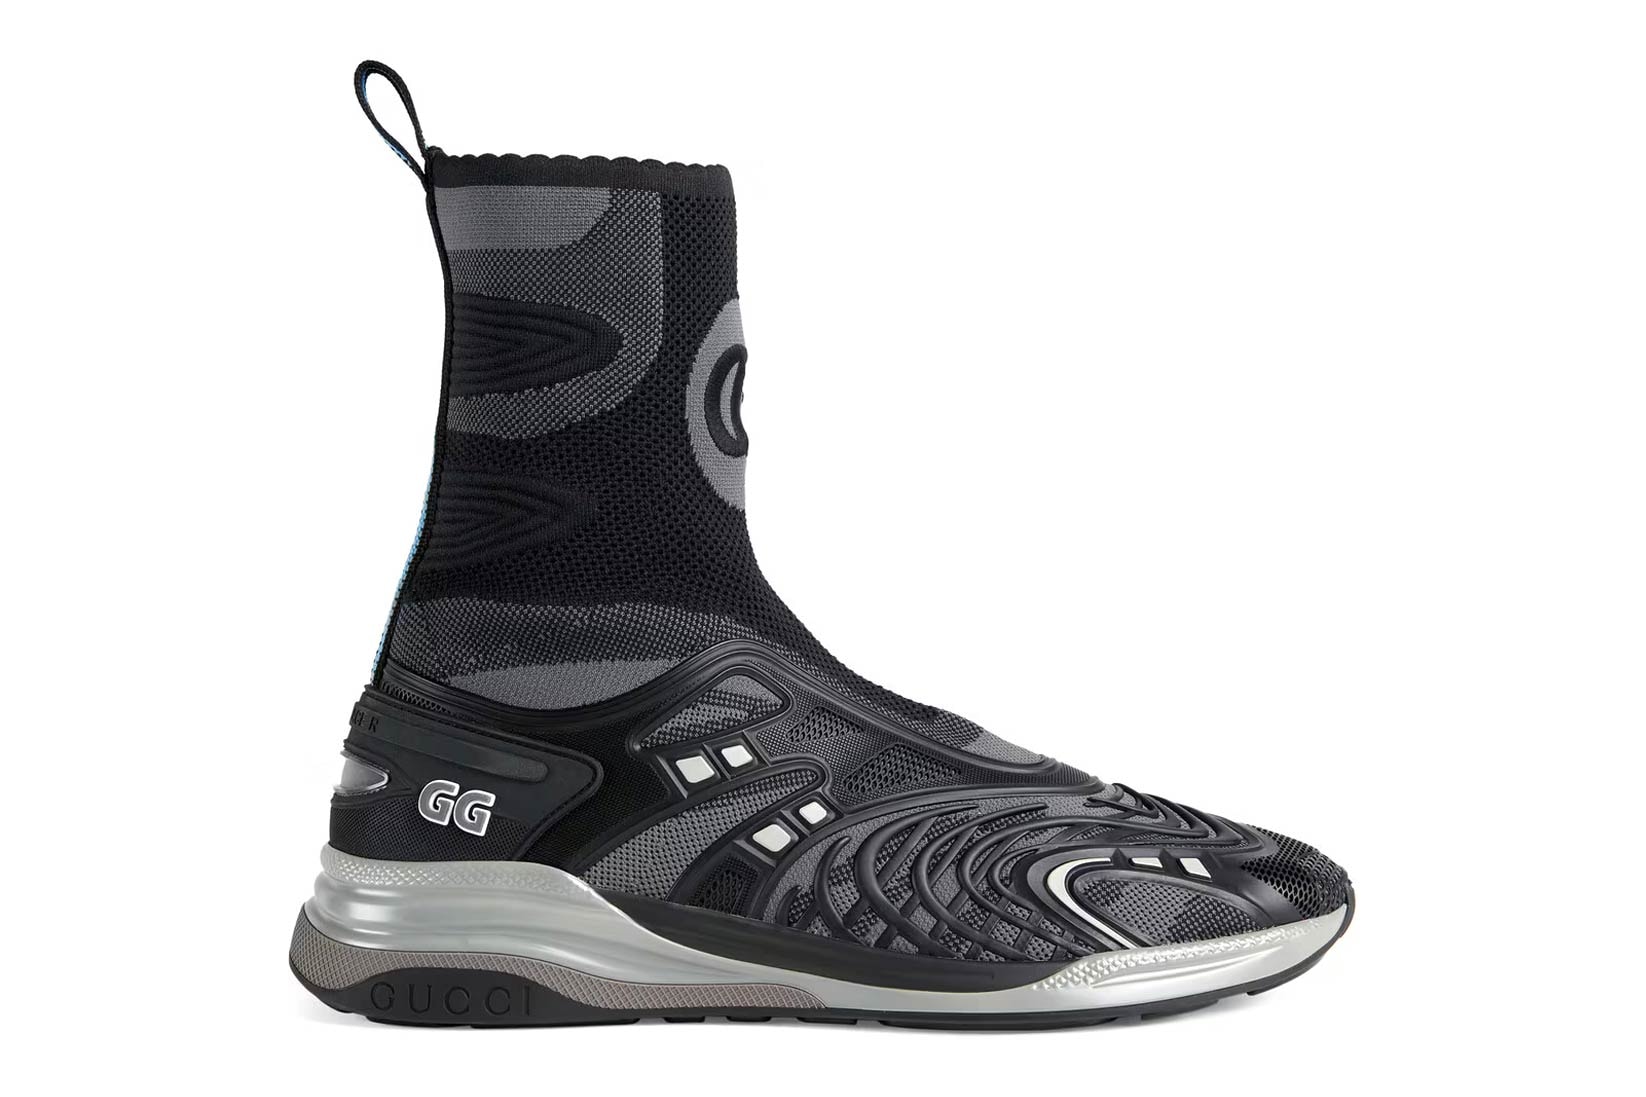 Gucci Ultrapace R mid-top sneaker neon black sneakers kicks footwear luxury Italian Style ‎655738 2TK10 8895  ‎660011 2TK10 8870 neon green